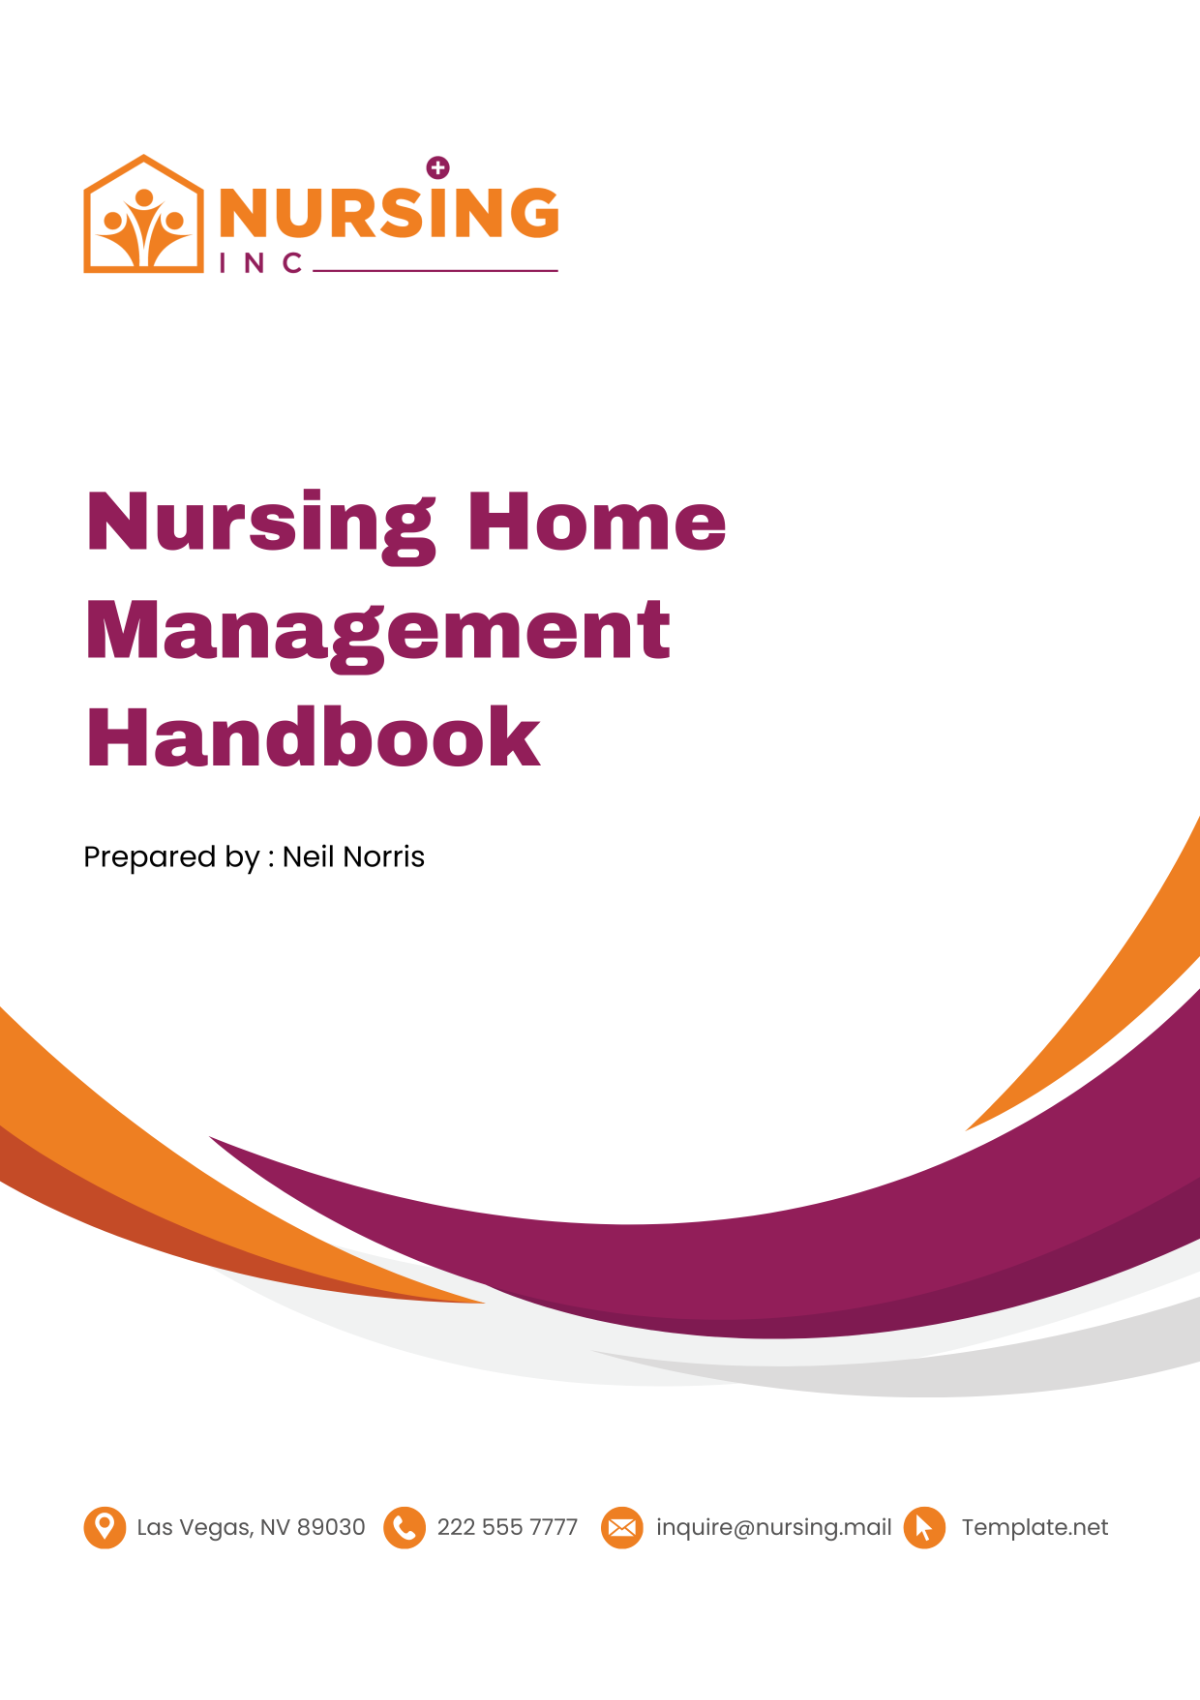 Nursing Home Management Handbook Template